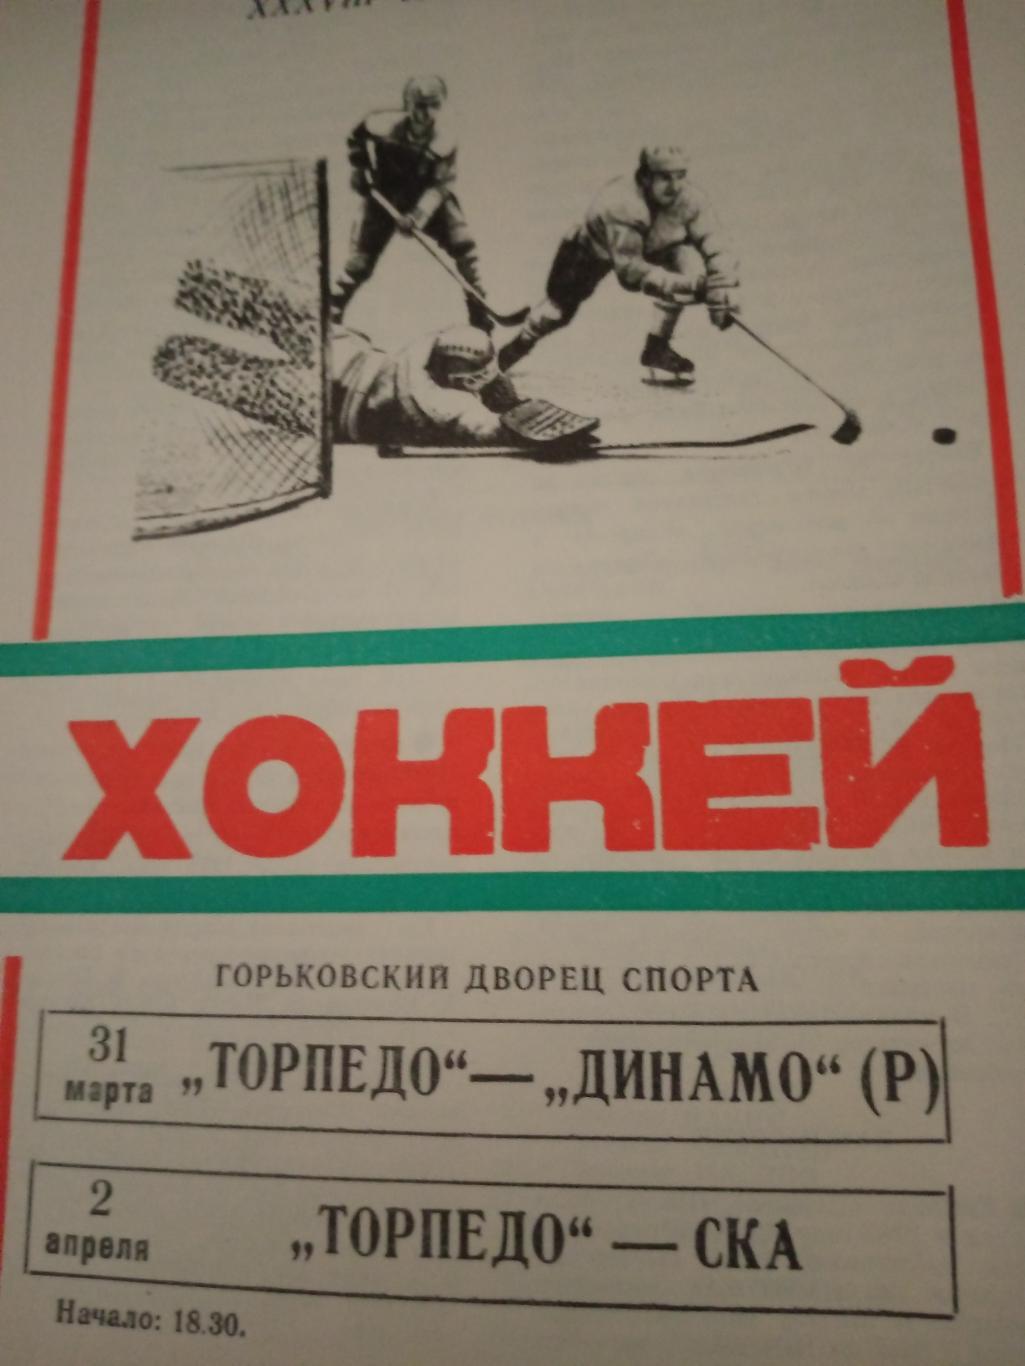 Горький, 1984 г. Торпедо - Динамо Рига (31.03), СКА (2.04)